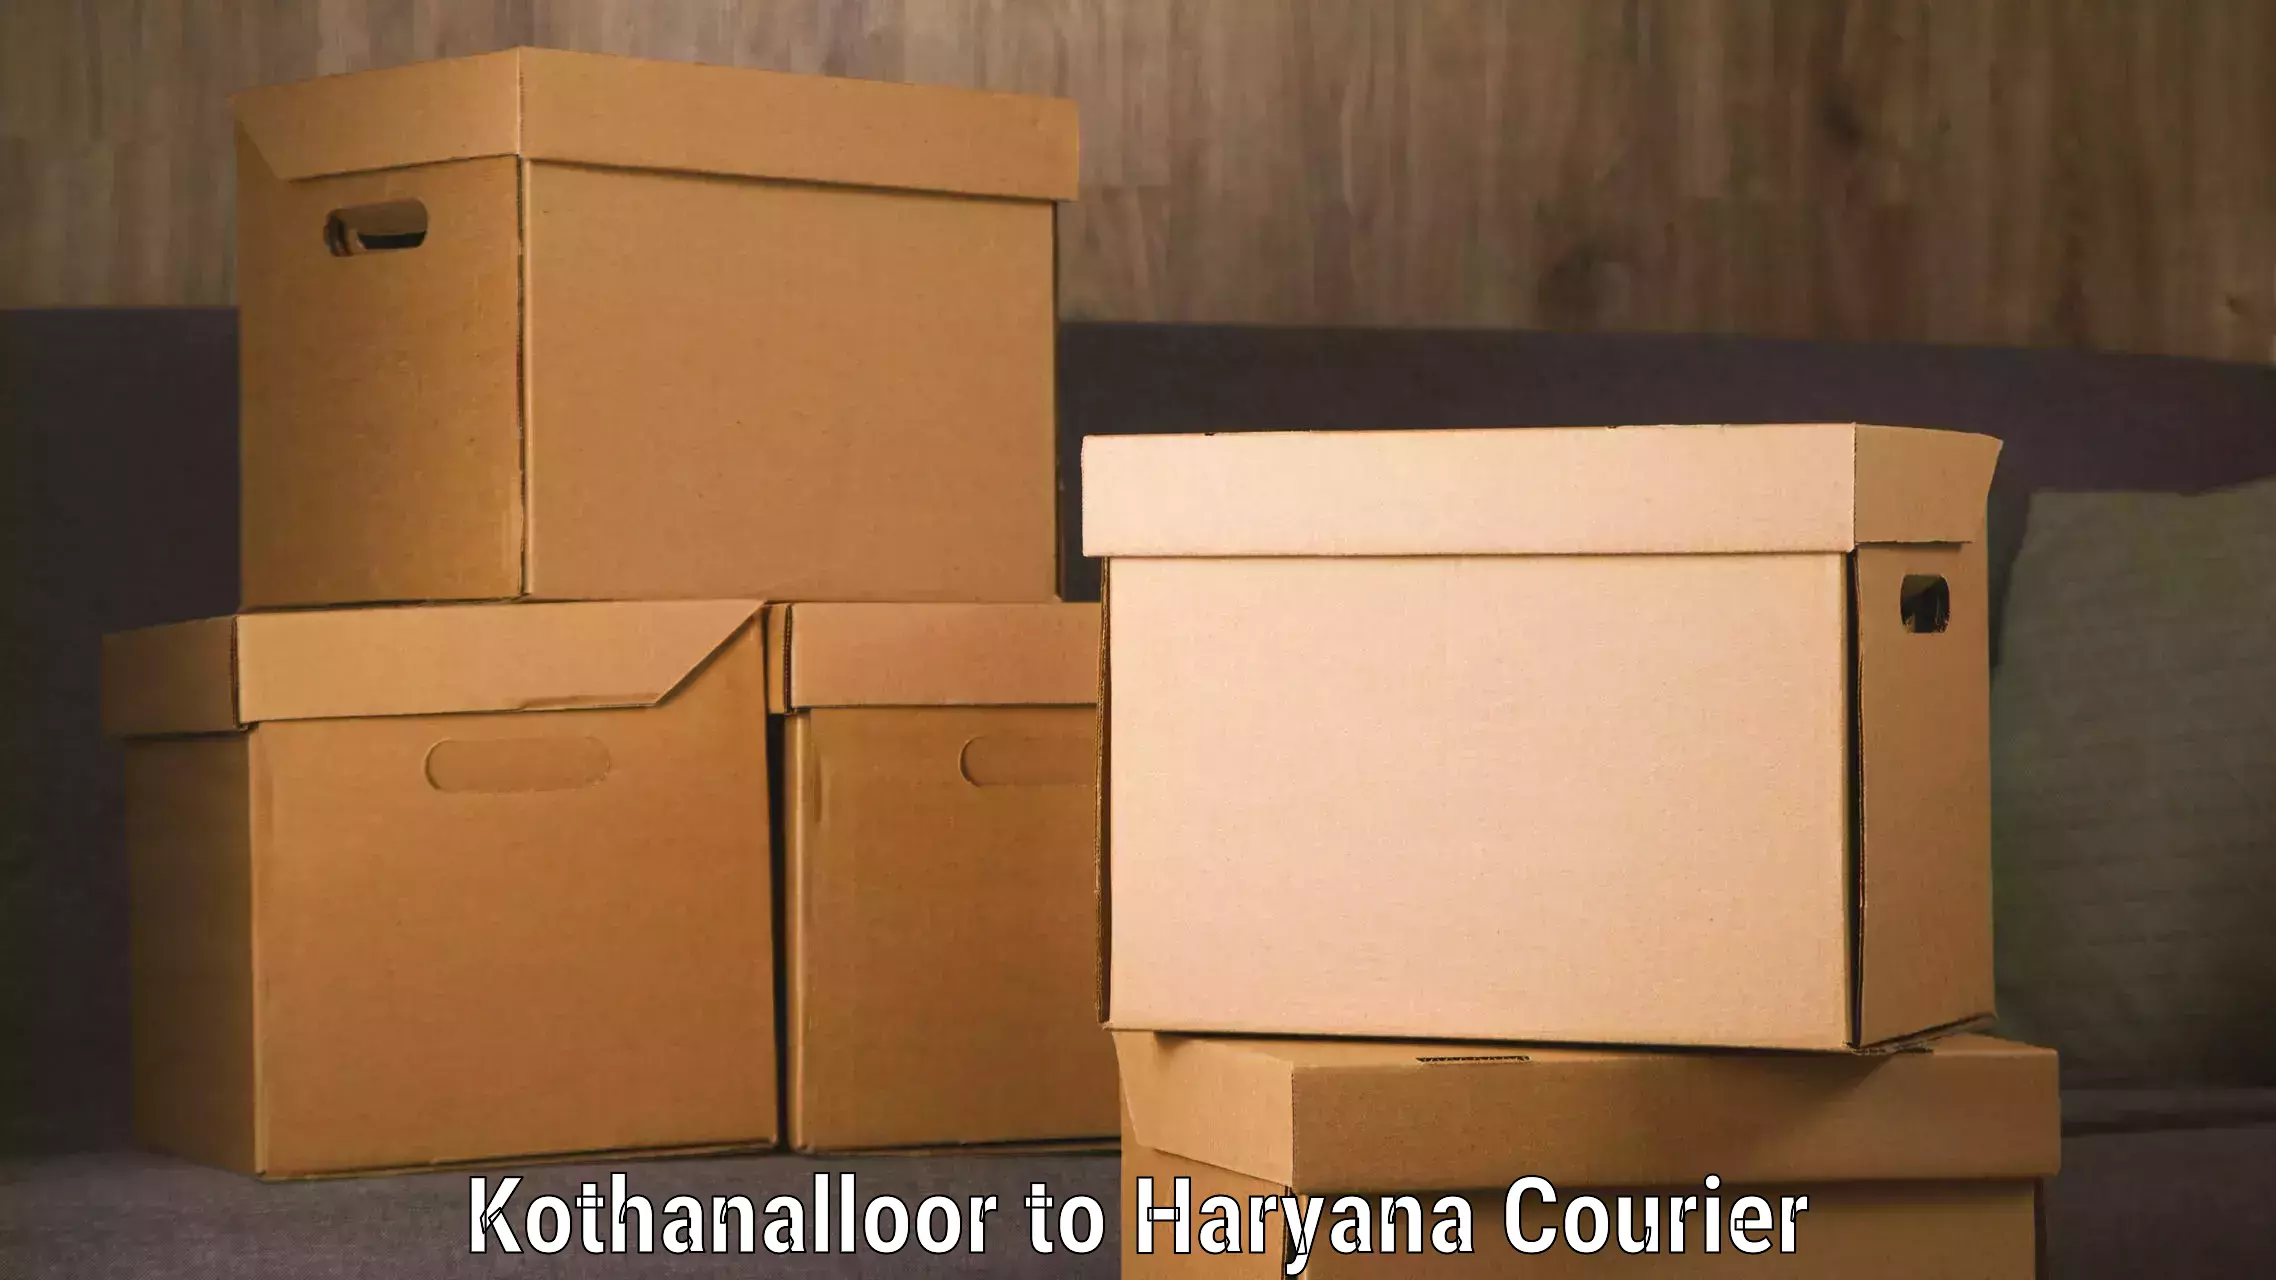 Long distance courier in Kothanalloor to IIIT Sonepat